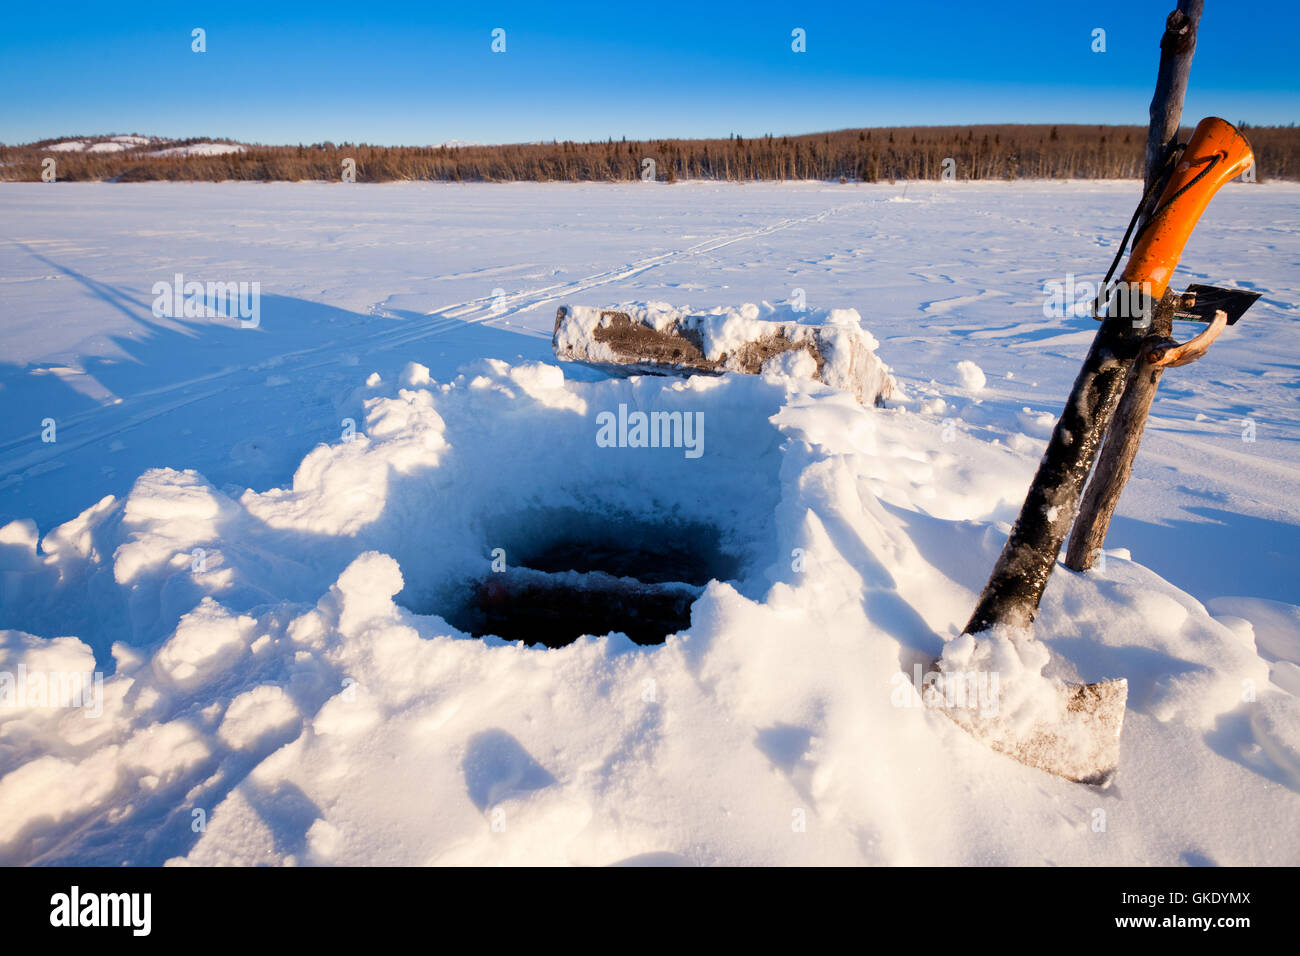 Ice-fishing hole Stock Photo